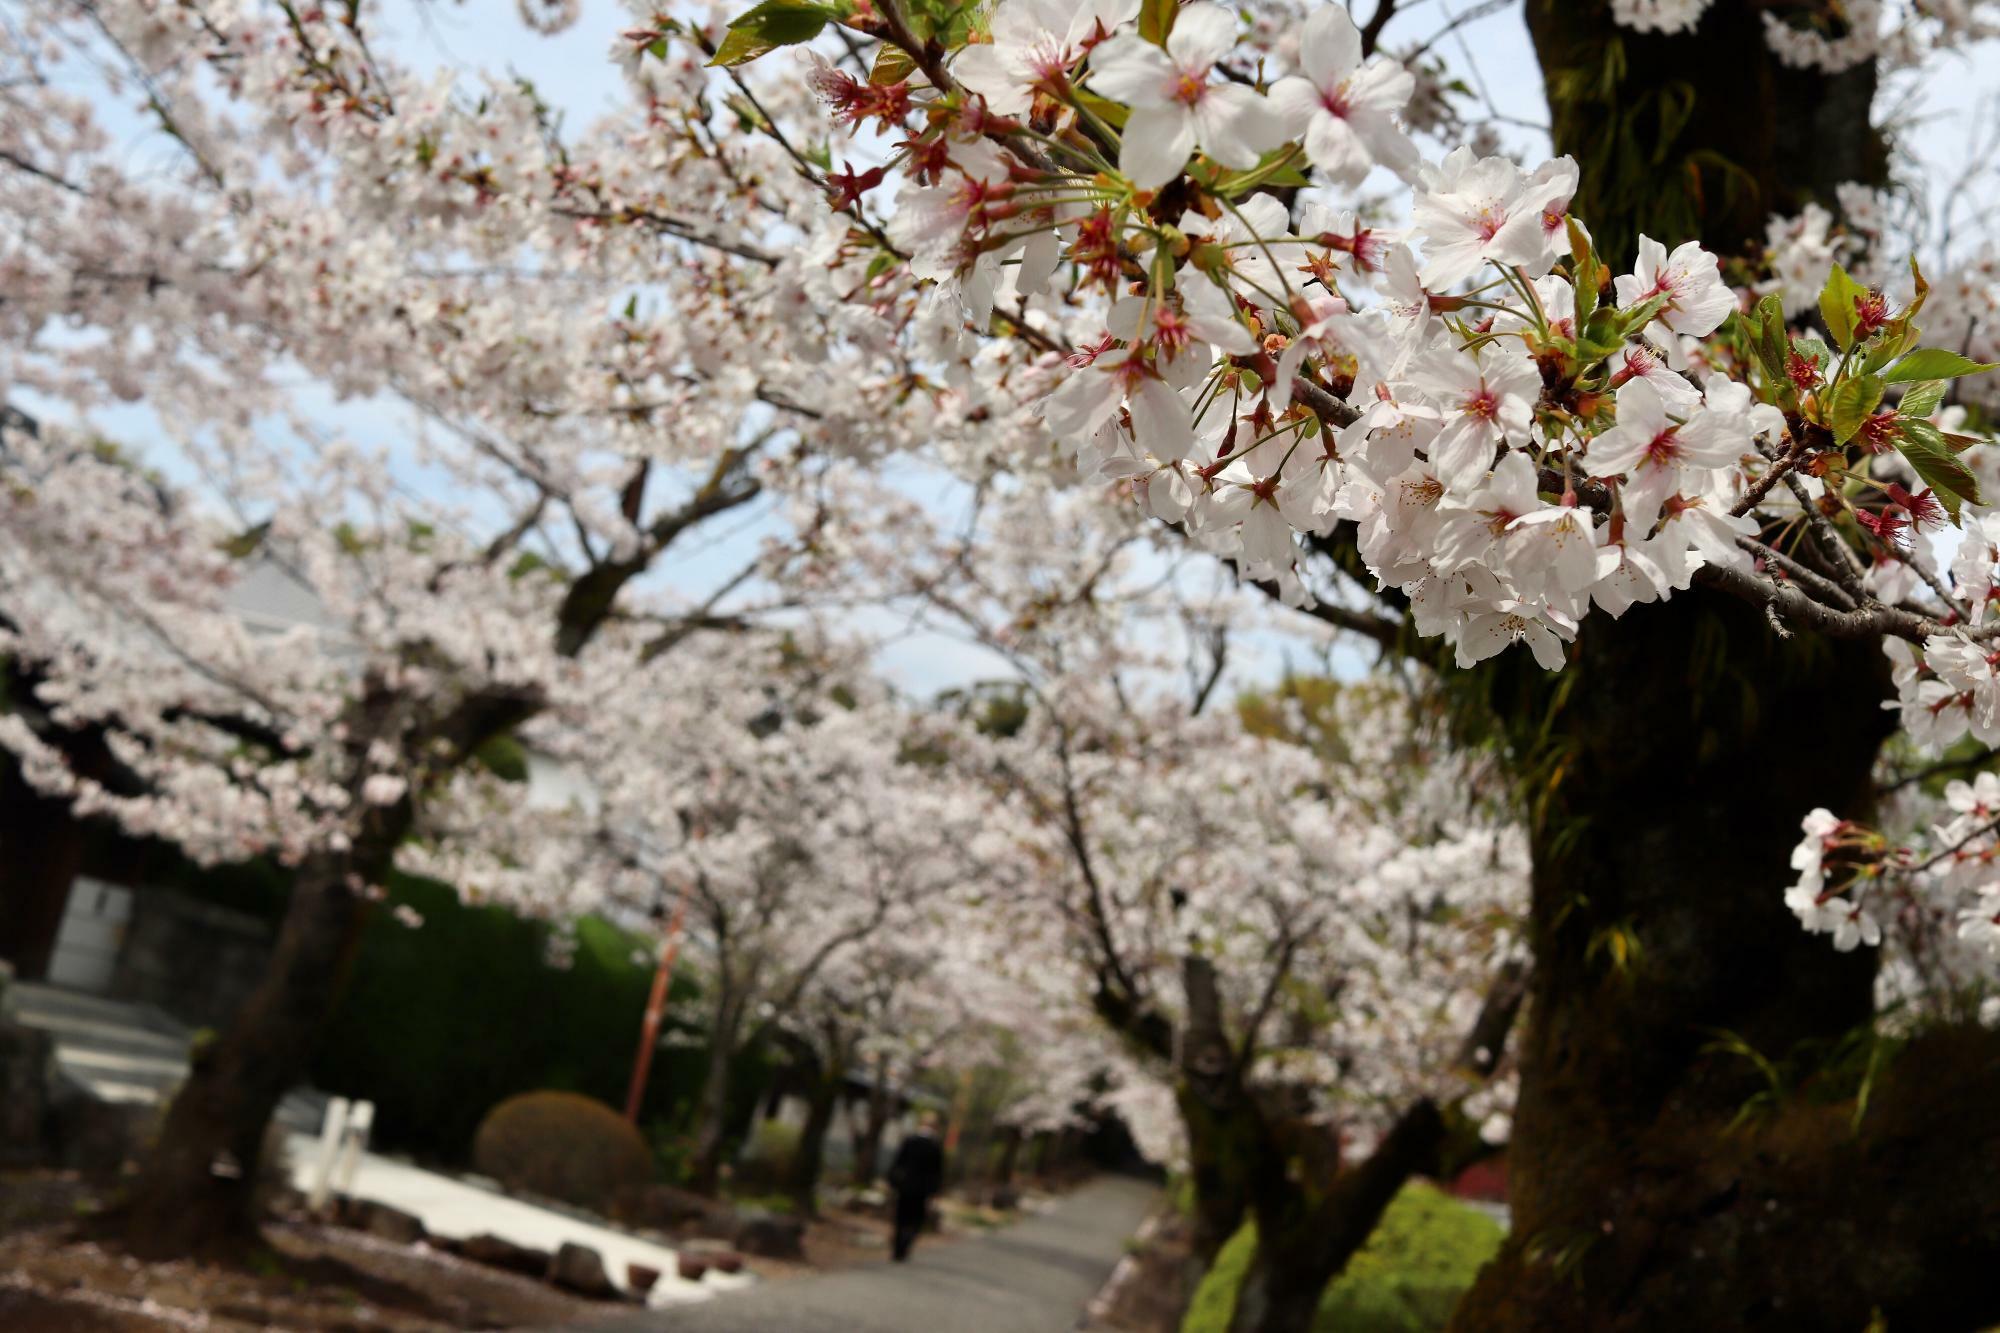 参道の桜並木が美しい花をつけていました